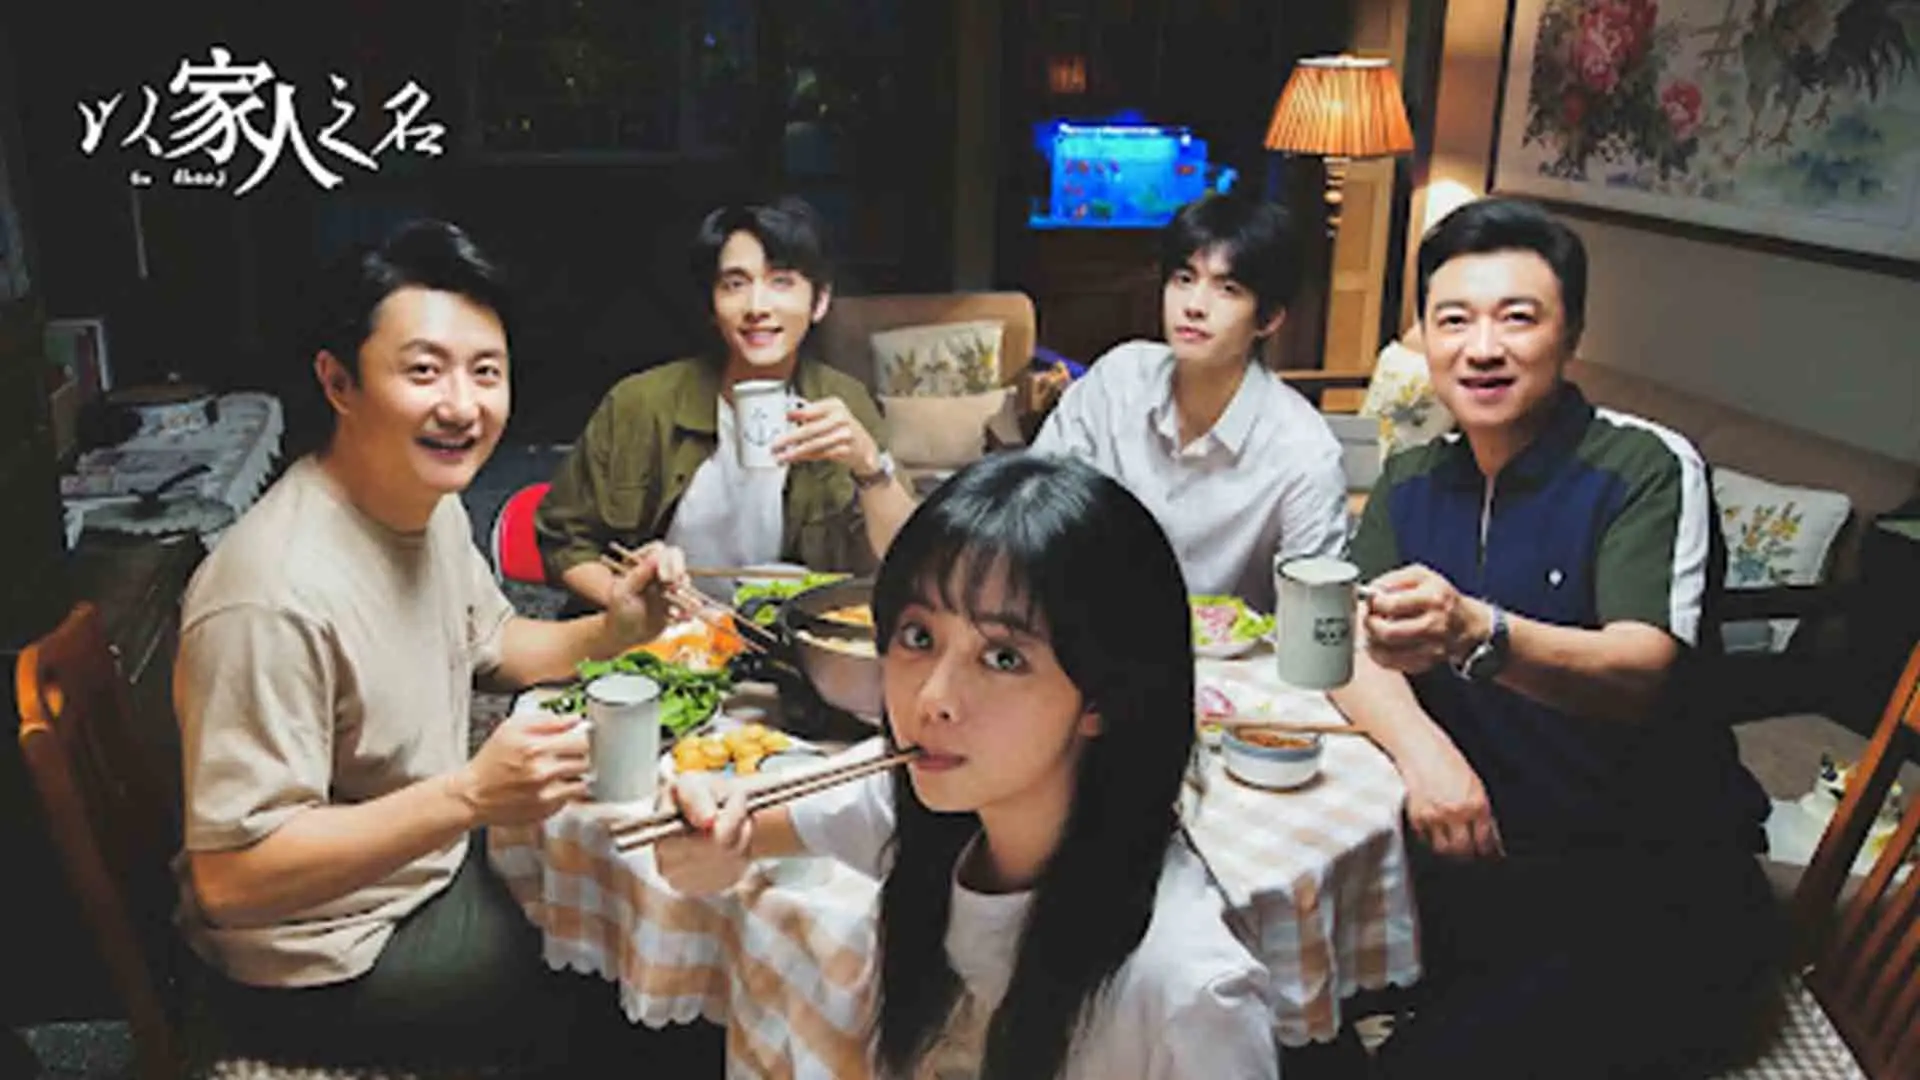 بازیگران اصلی سریال Go Ahead دور میز غذا ۳۰ تا از بهترین سریال های چینی بهمراه امتیاز IMDB ایتی مایتی